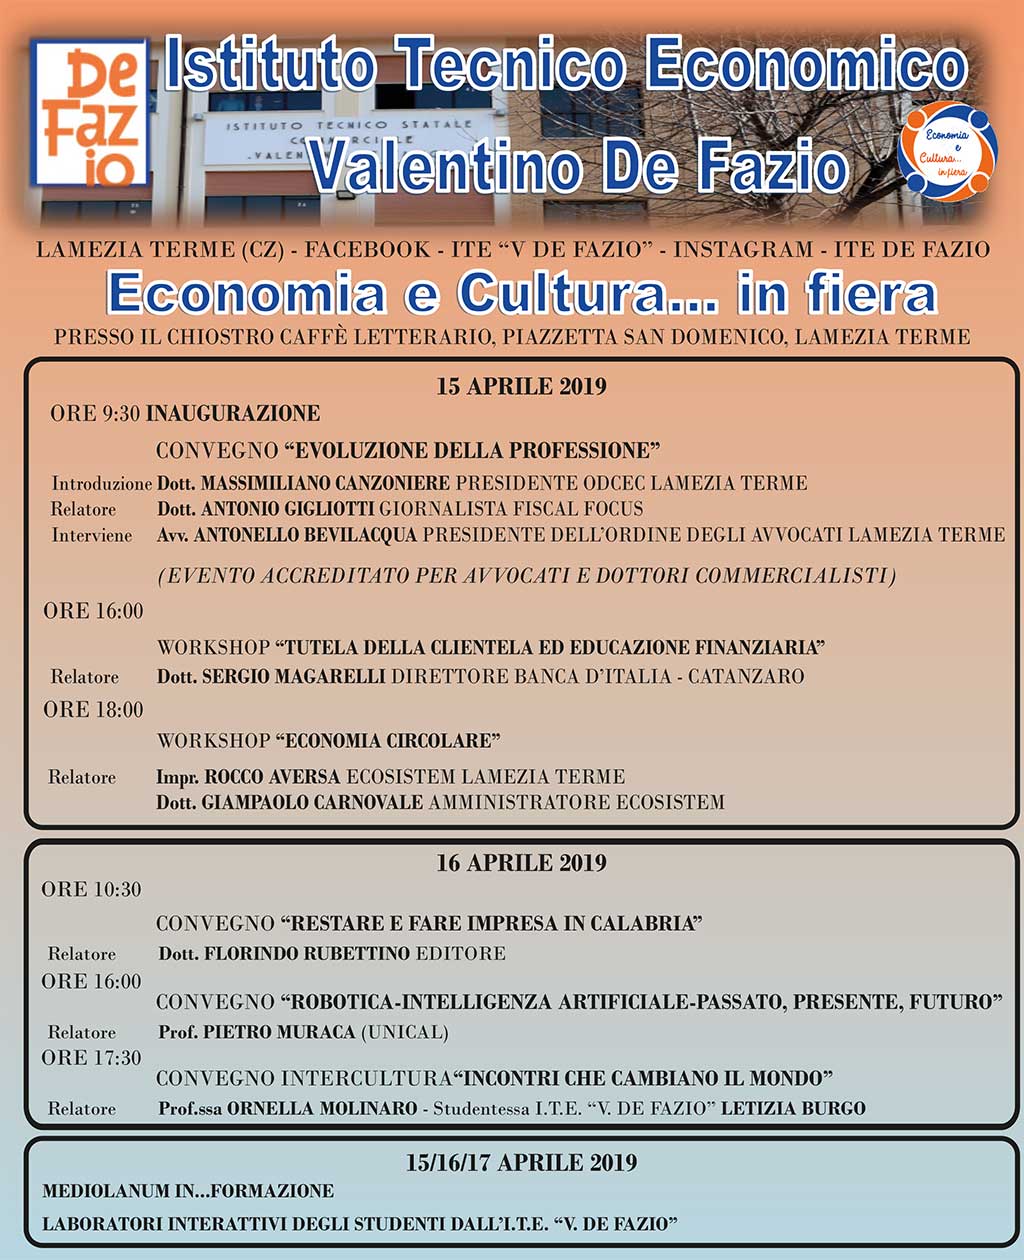 Volantino_Economia-e-Coltura-in-Fiera-15042019.jpg